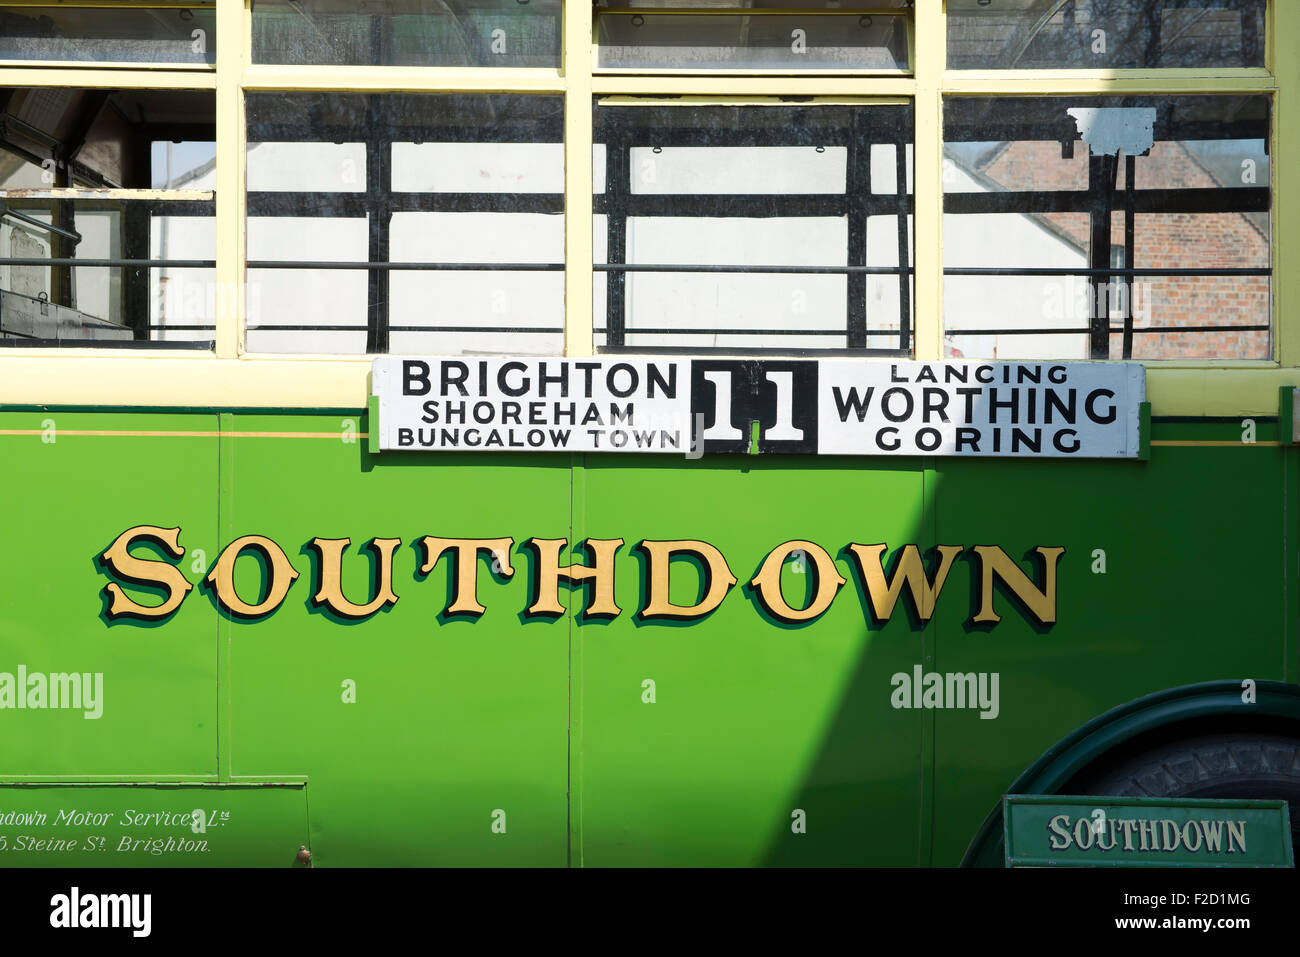 Ein Oldtimer Omnibus mit der "Southdown" grünen und cremefarbenen Lackierung Stockfoto